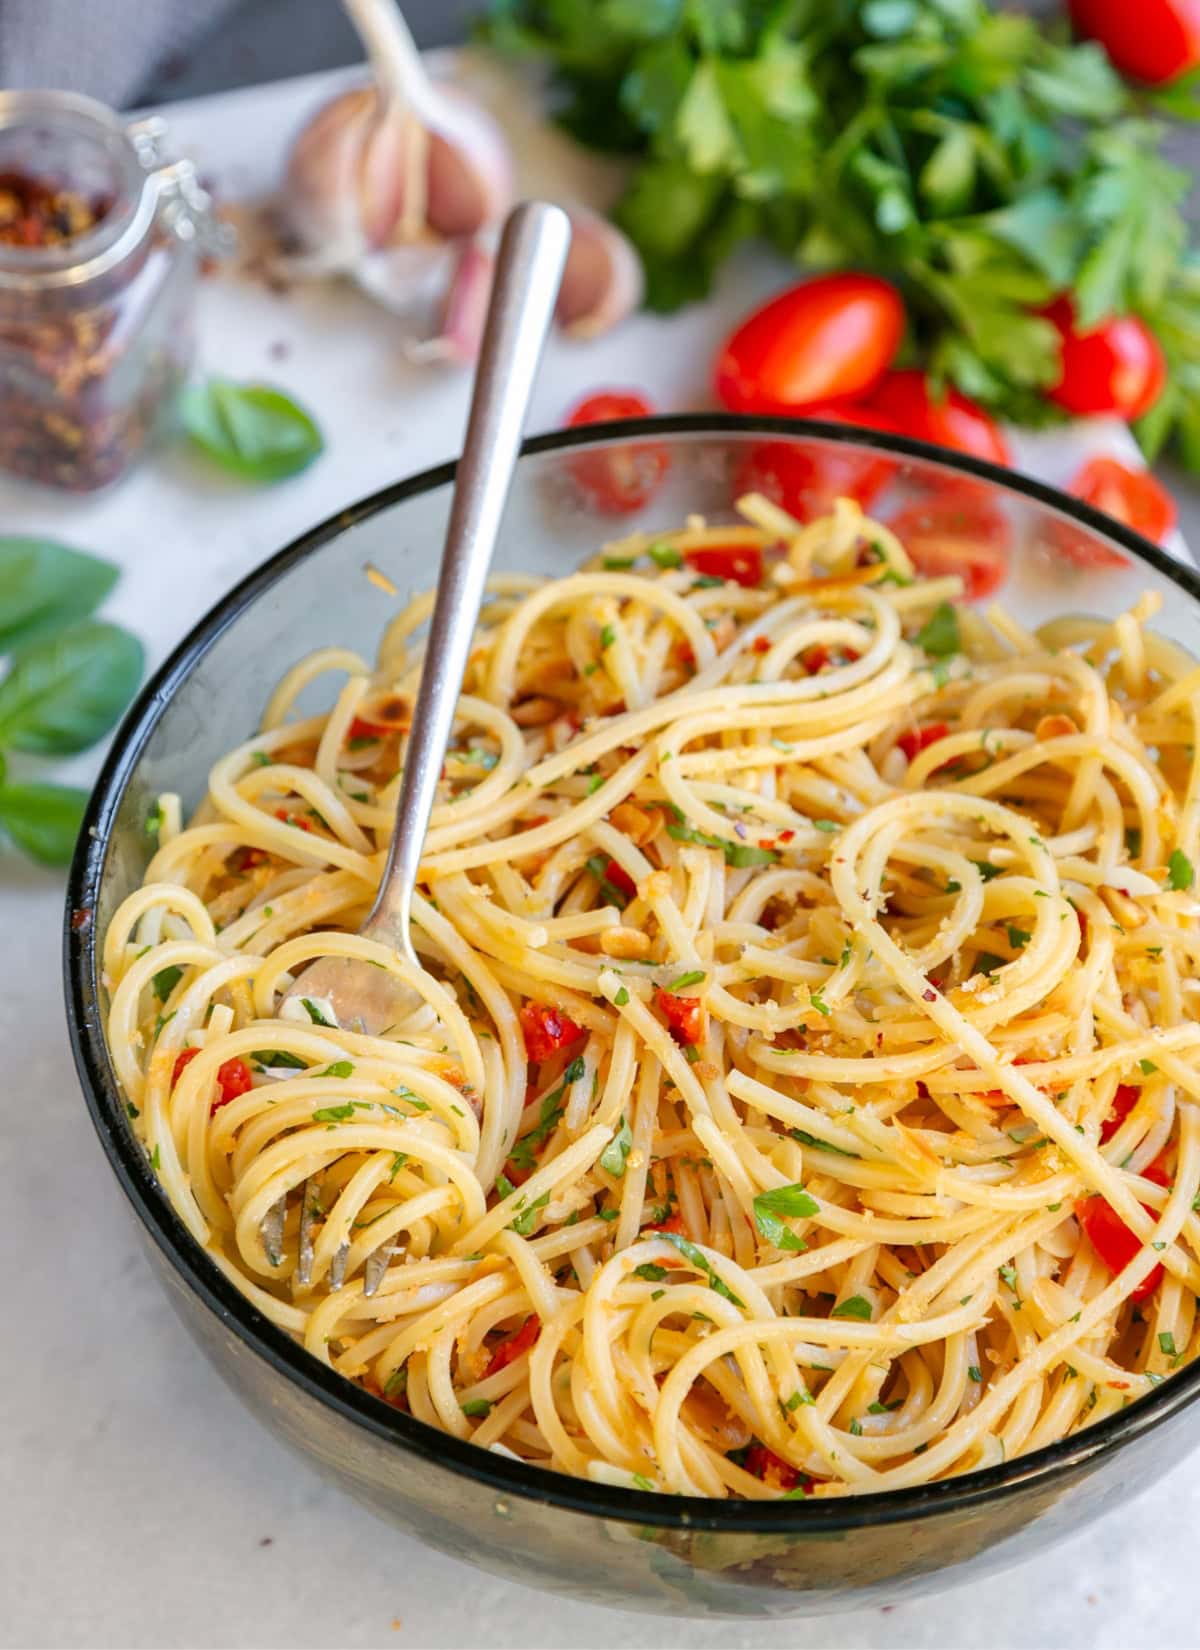 spaghetti alla carrettiera, with oil, garlic, pecorino and chili pepper flakes.